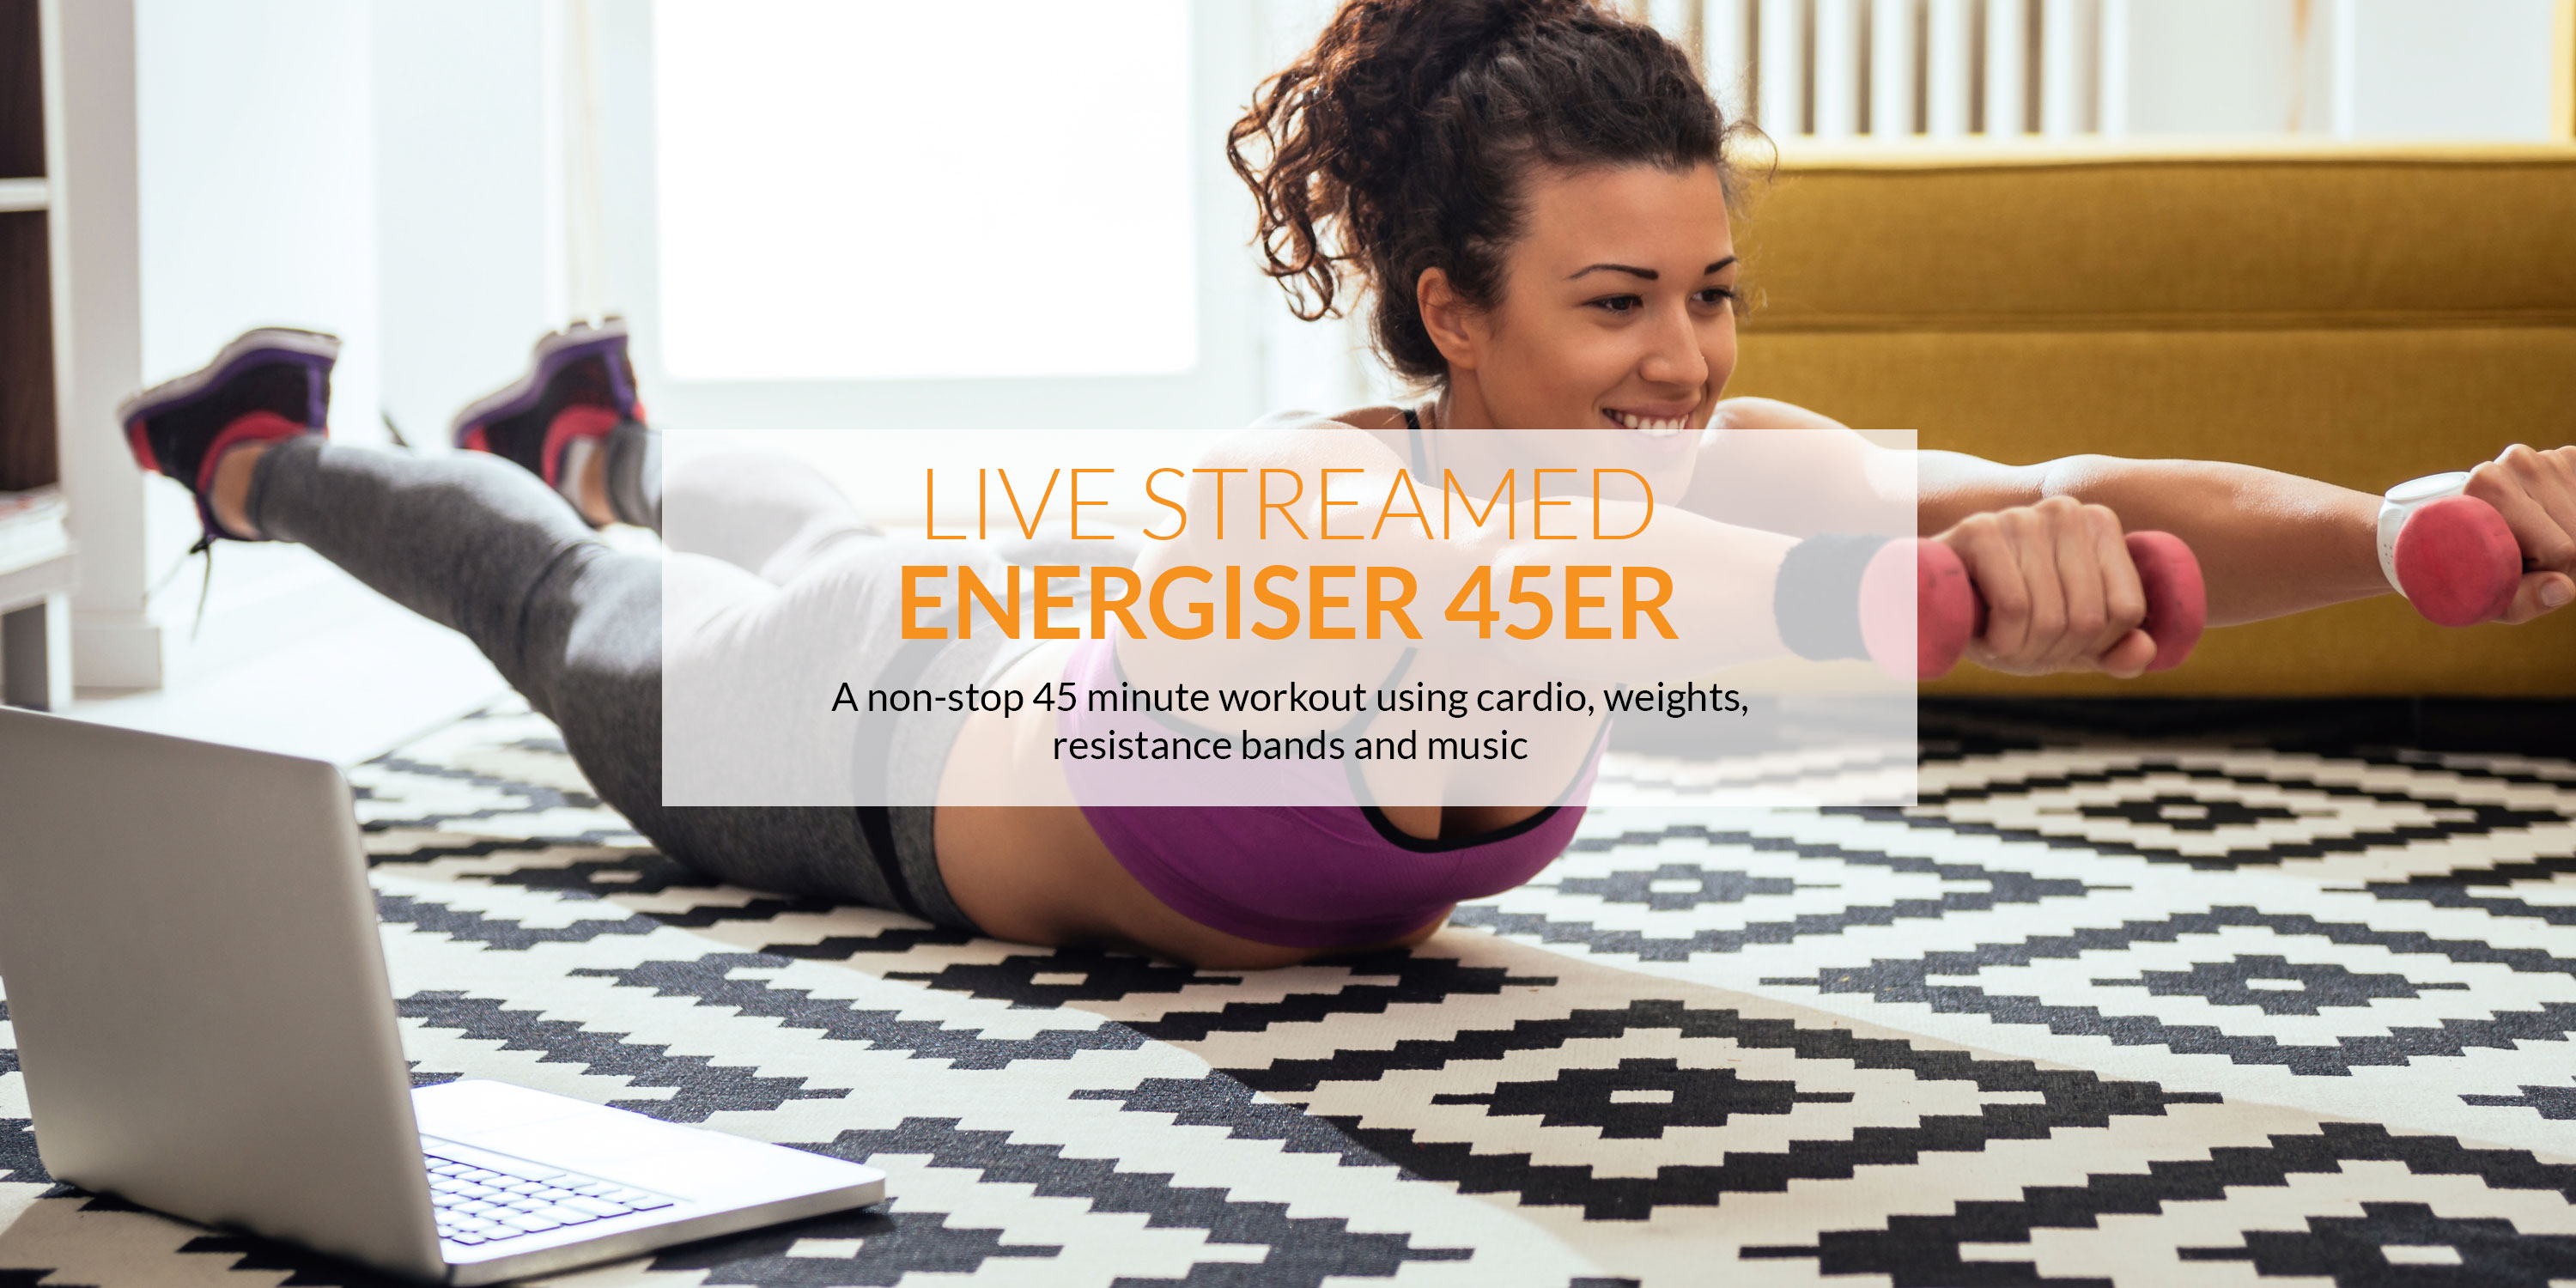 The best Energiser 45er live-streamed